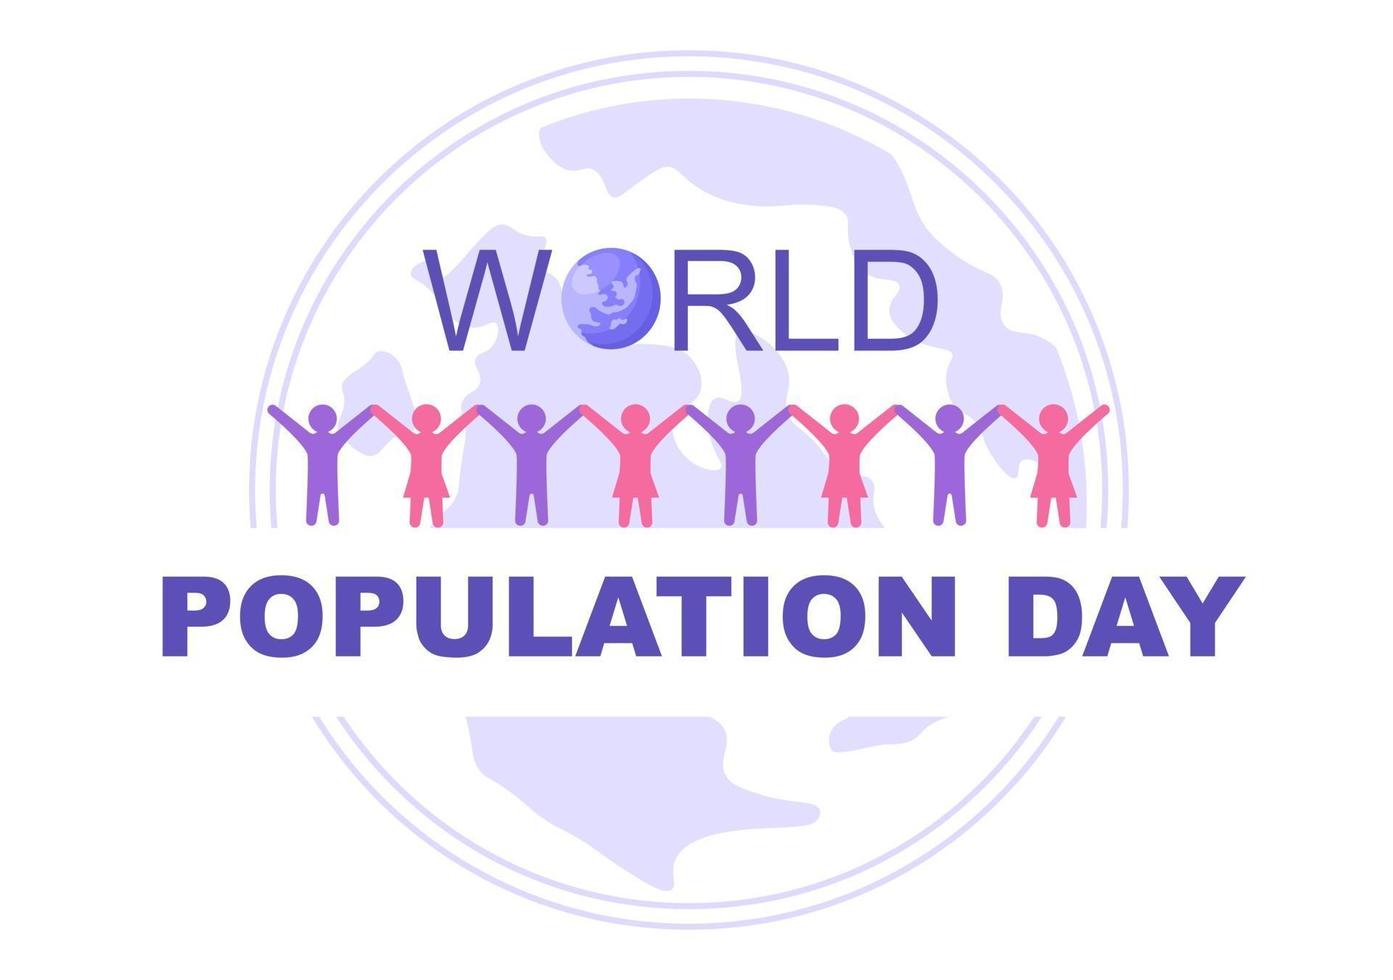 ilustração do dia da população mundial vetor